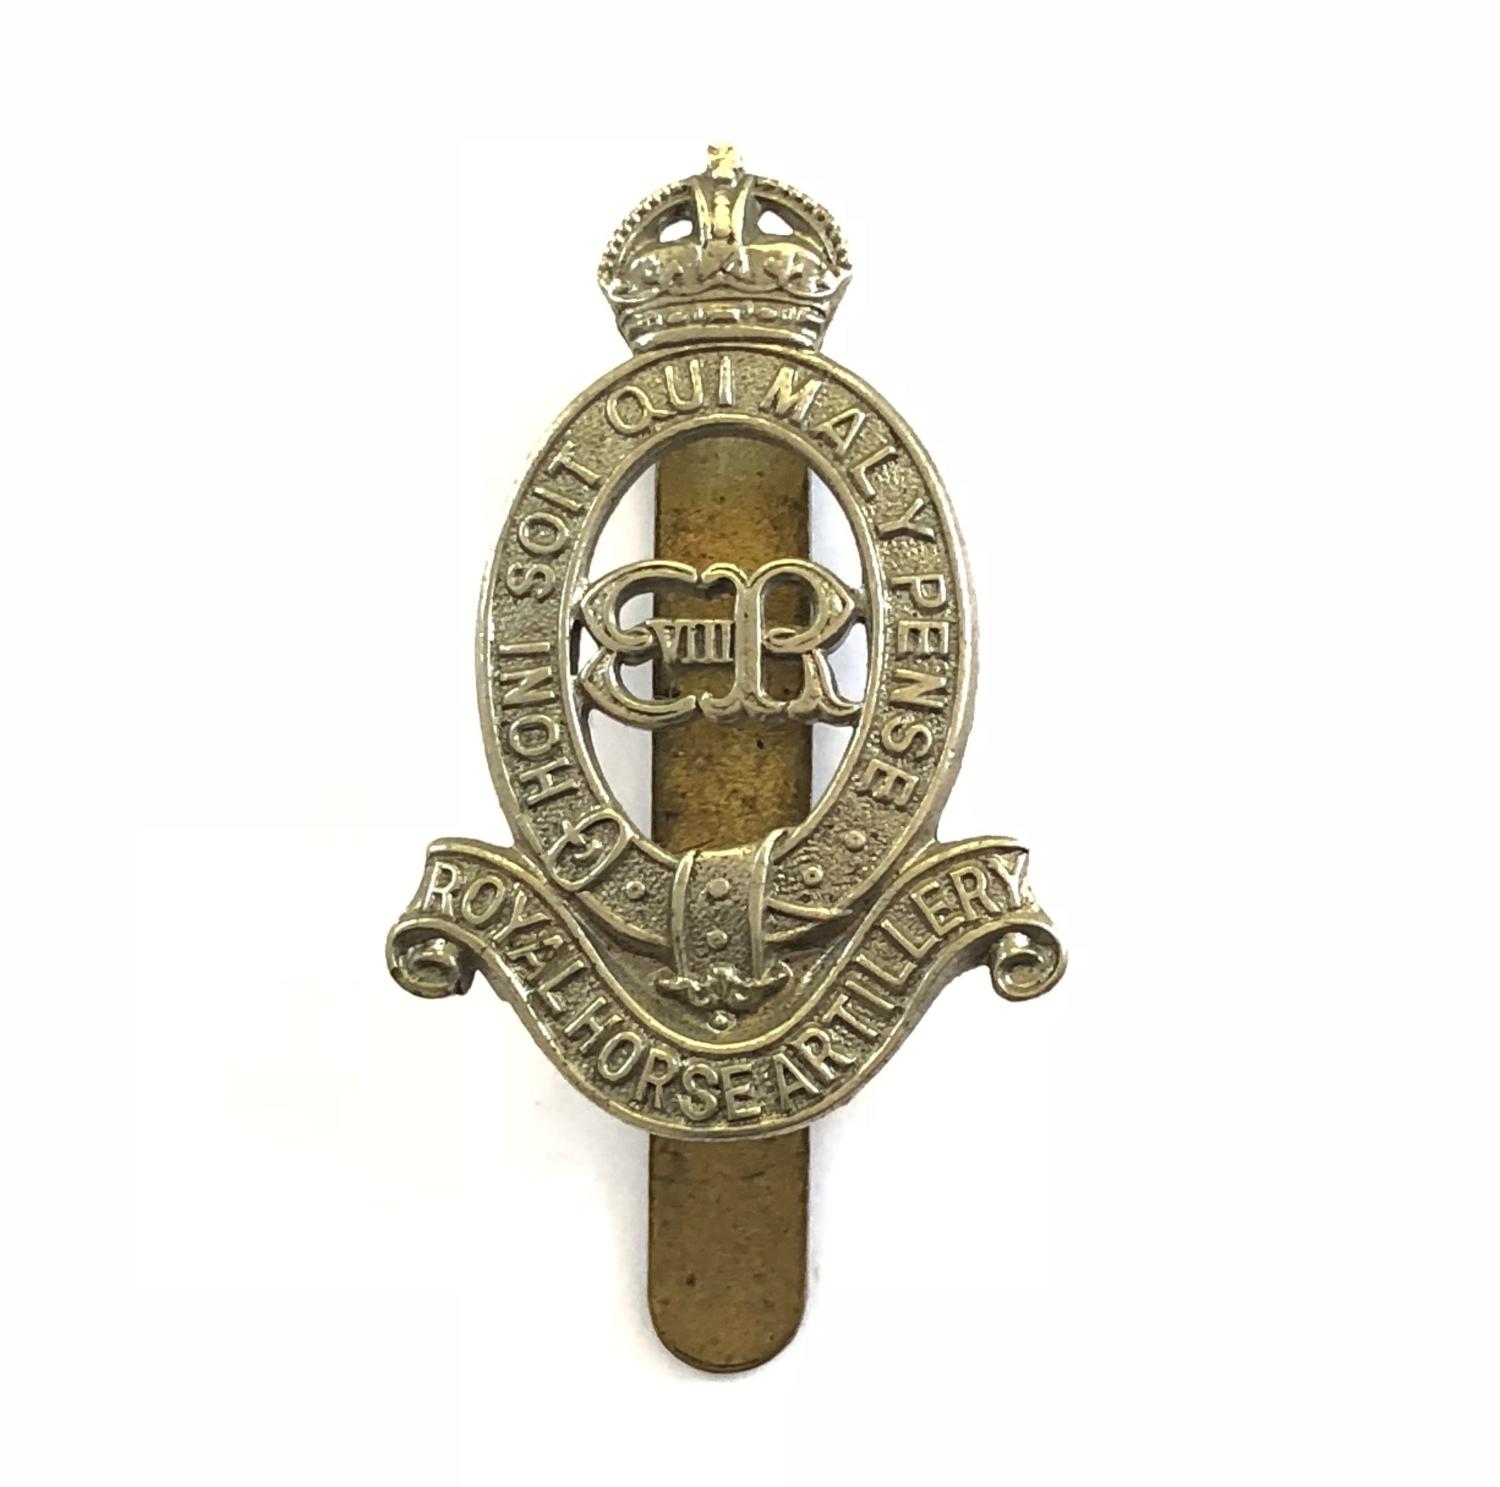 Royal Horse Artillery rare Edward VIII cap badge circa 1936